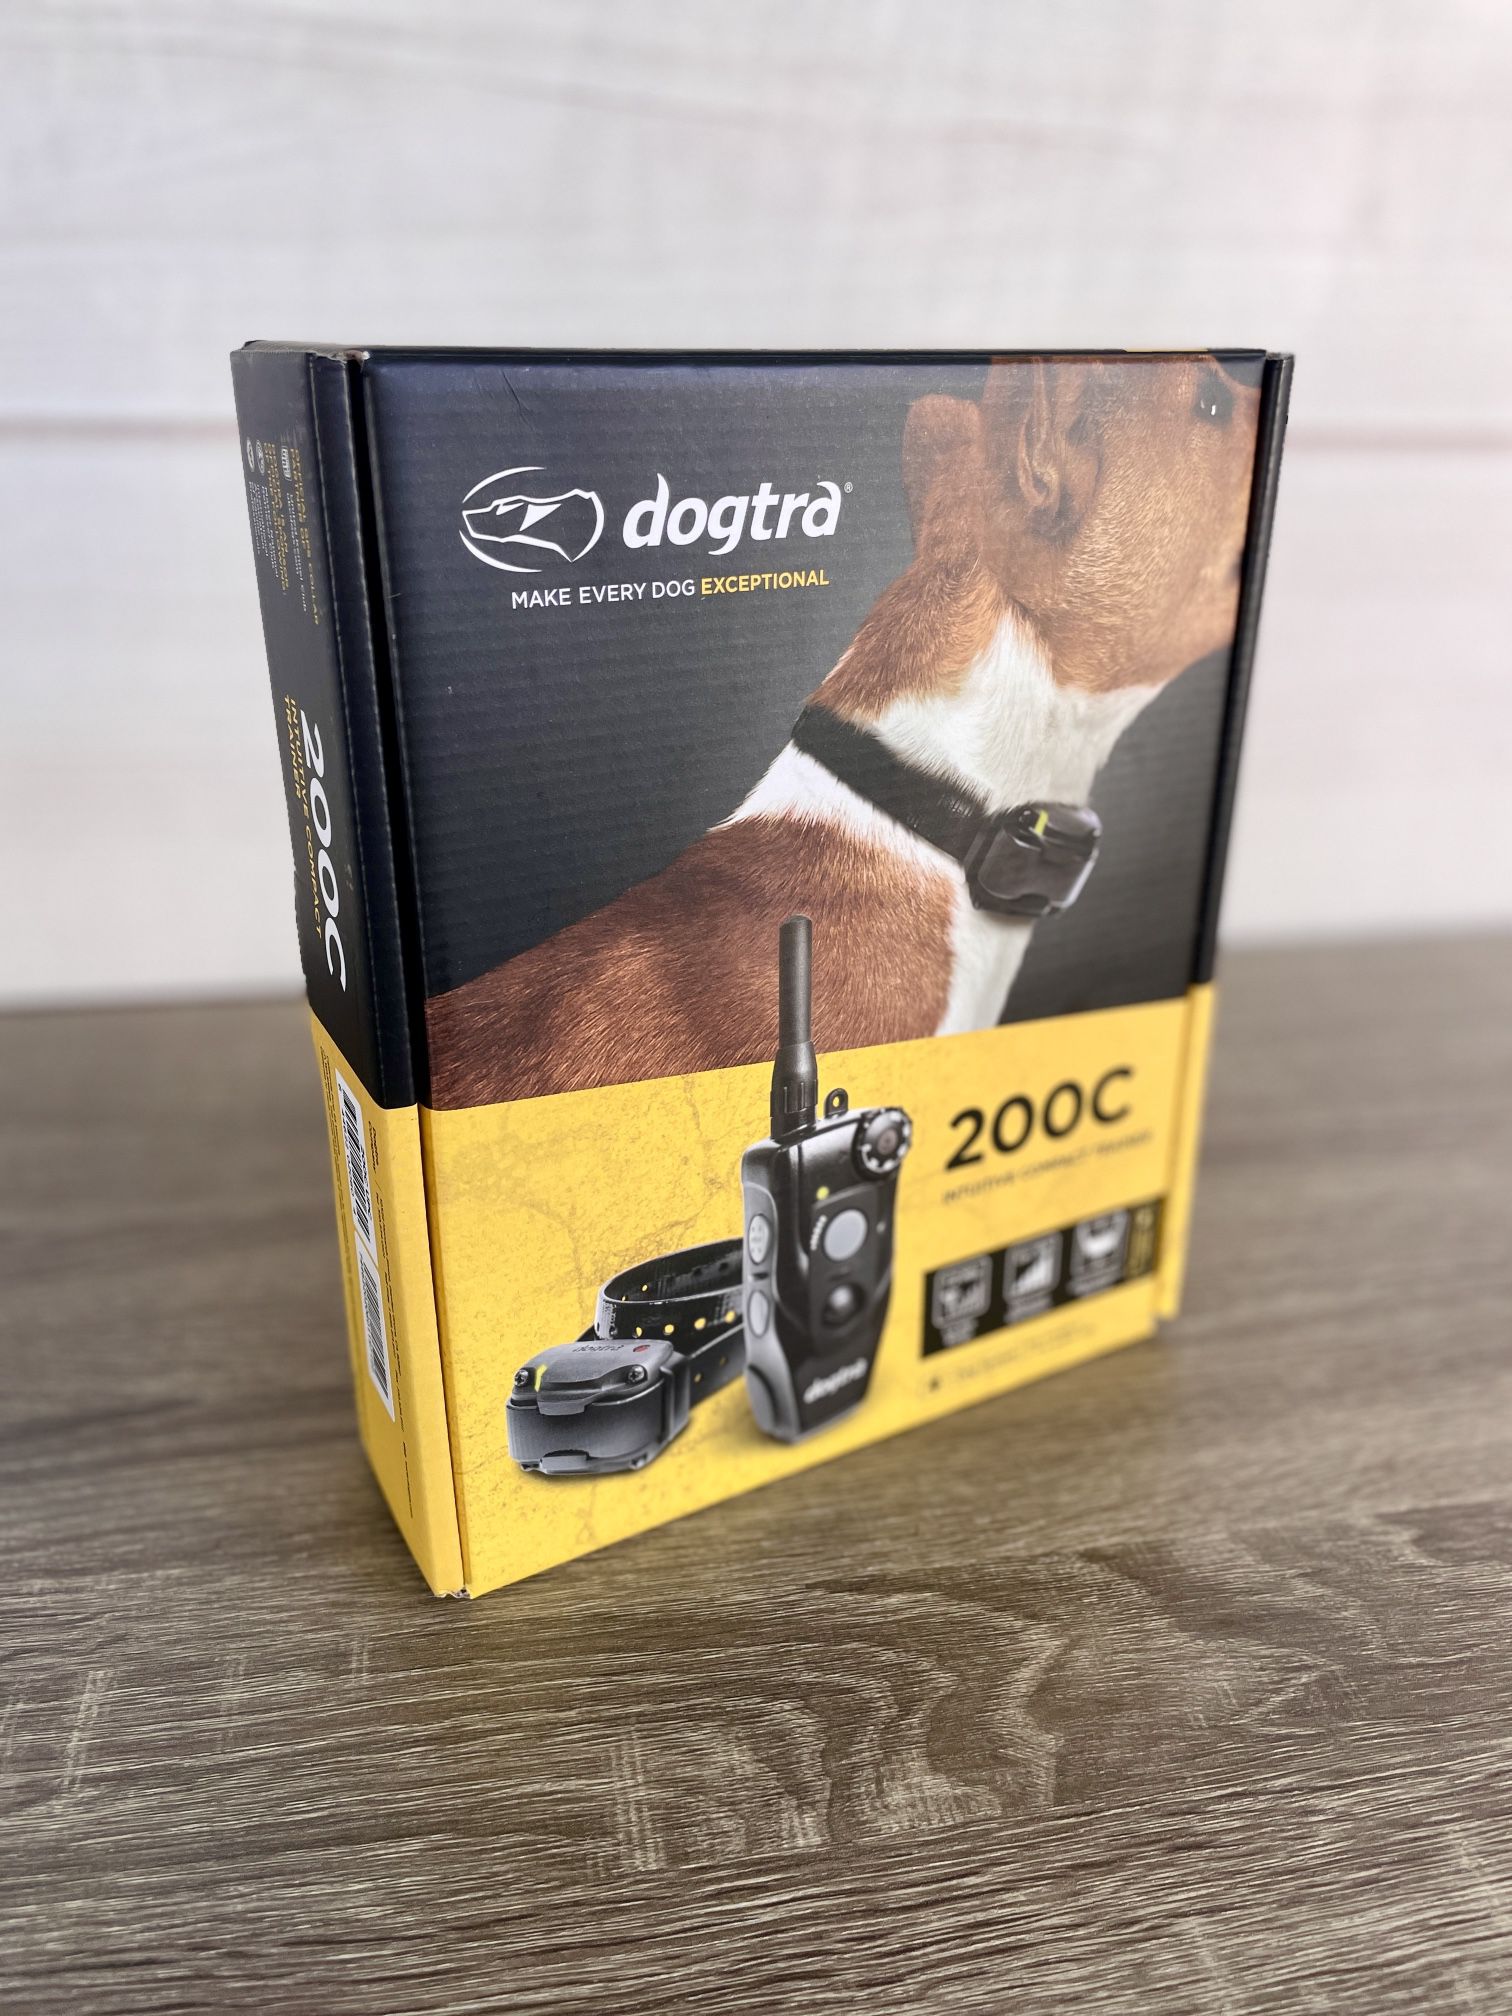 Dogtra 200C Dog Training Collar (eCollar) System